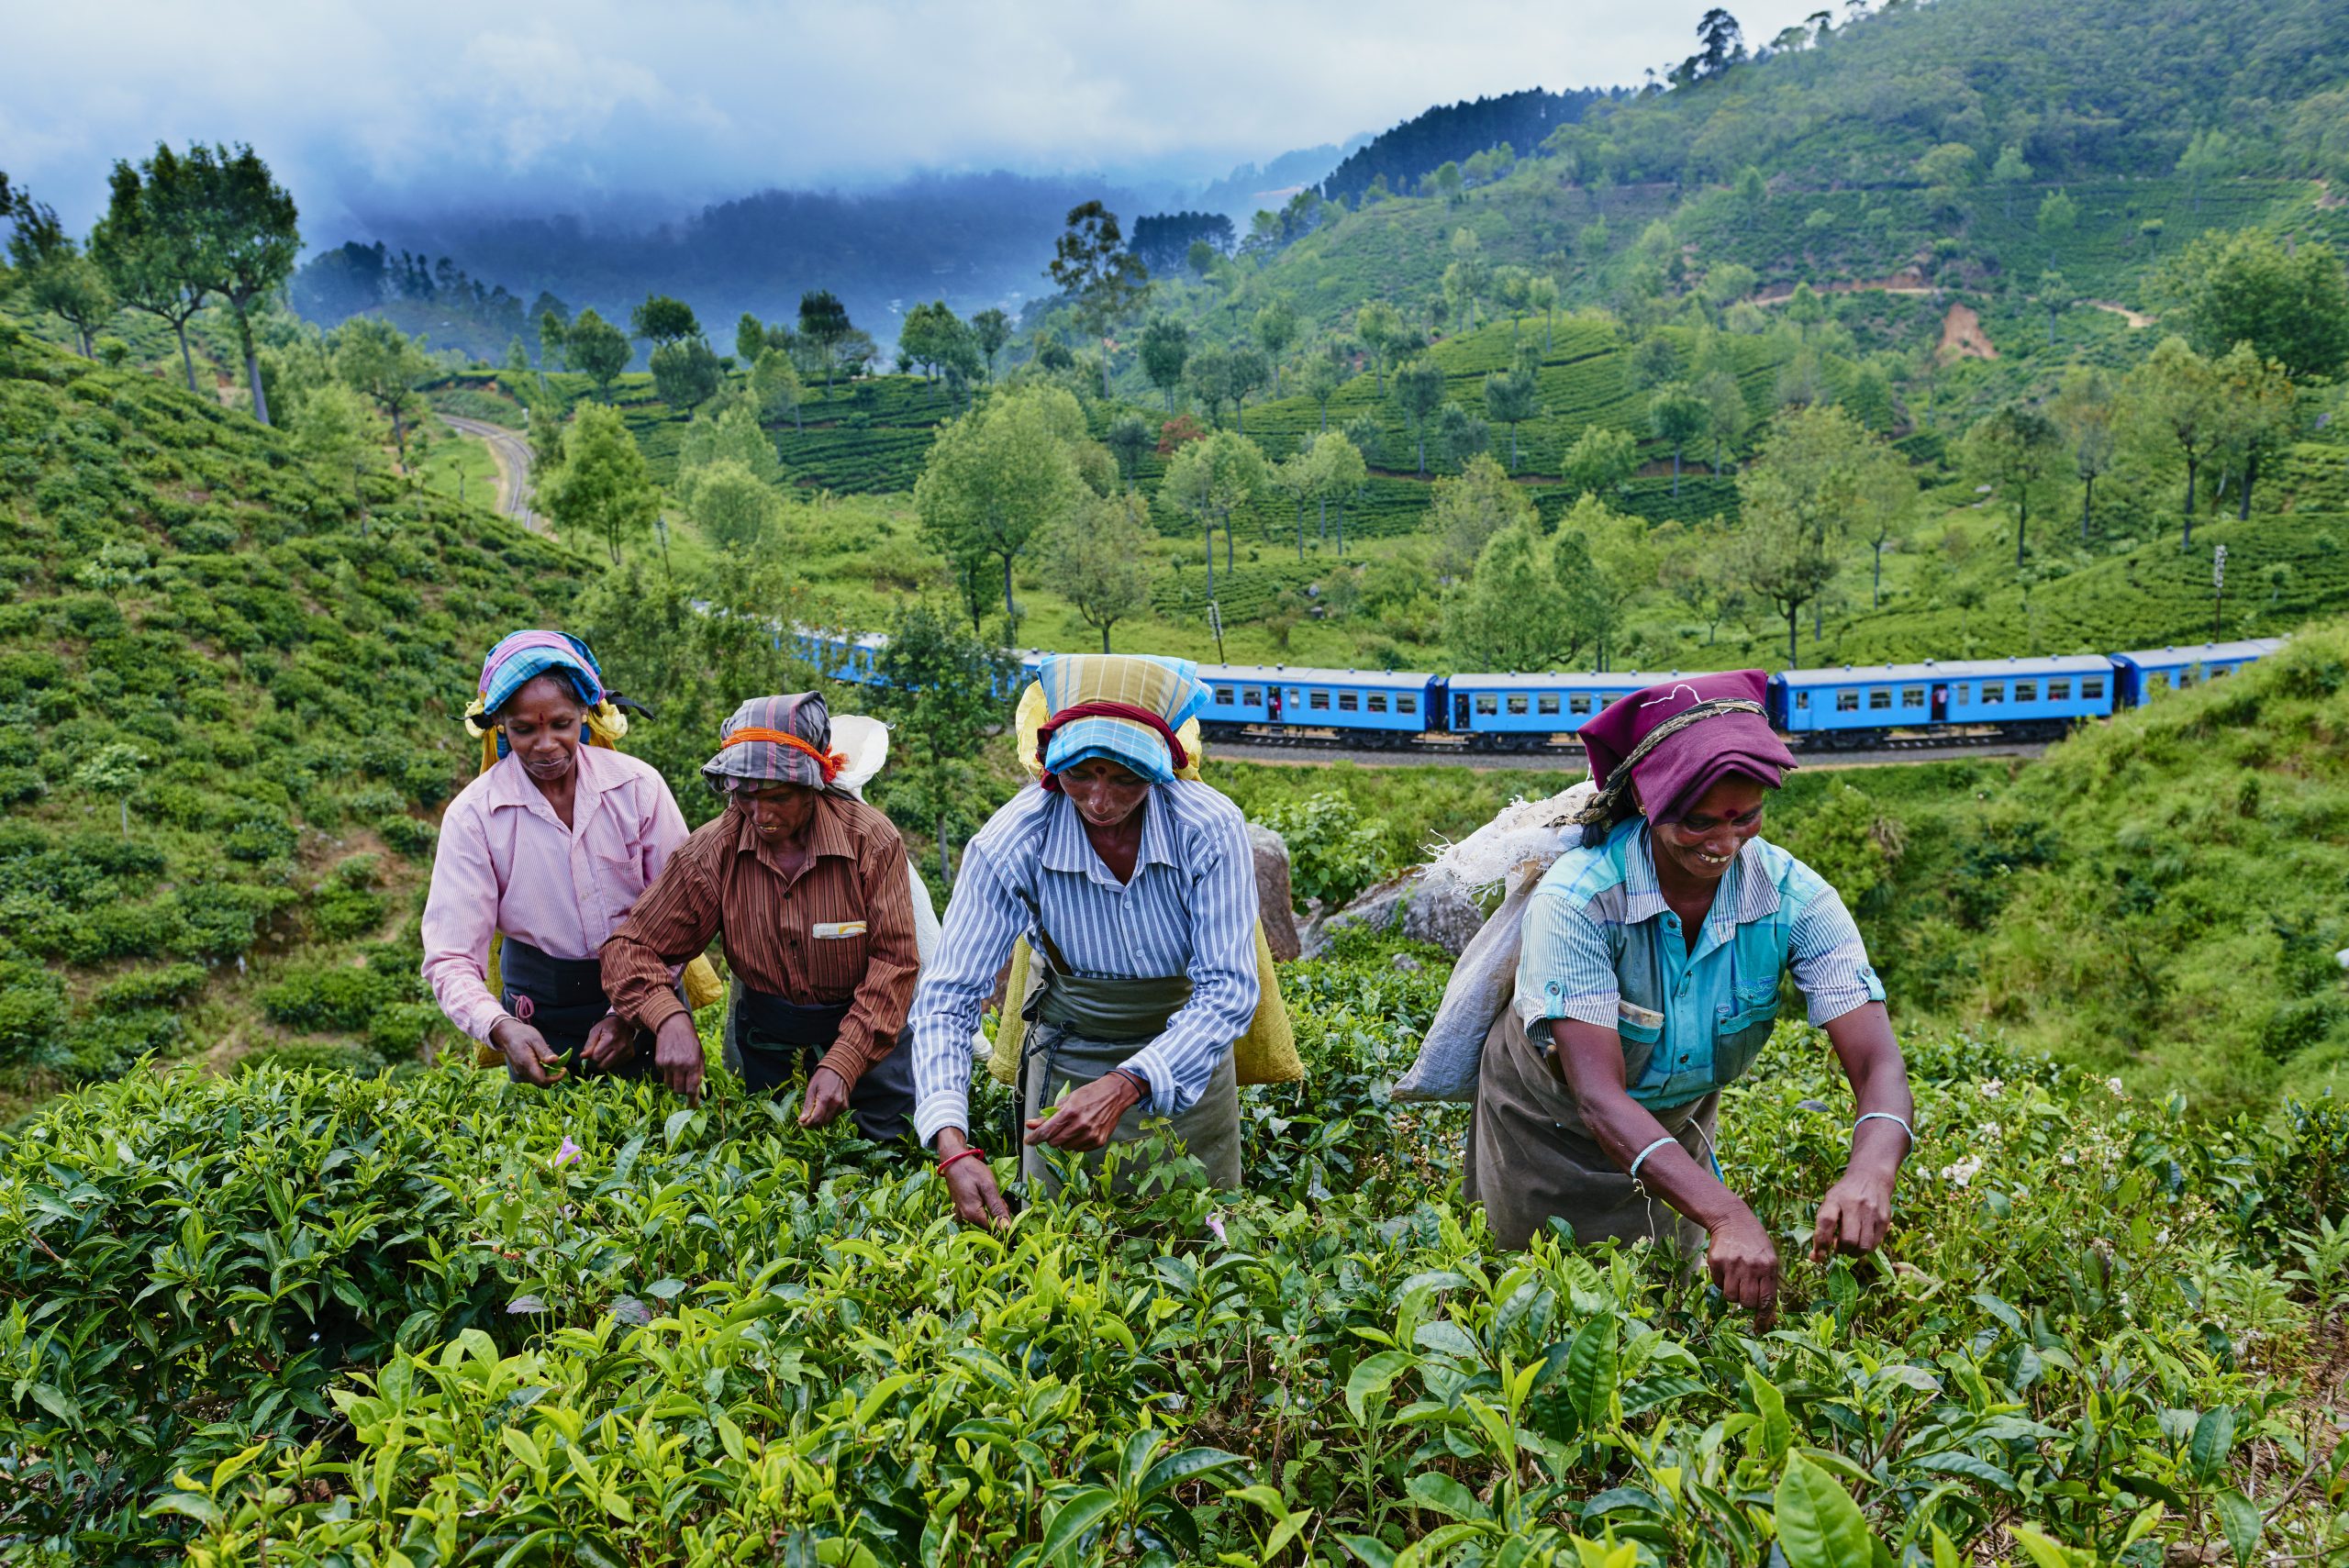 Sri Lanka, Haputale, tea plantation